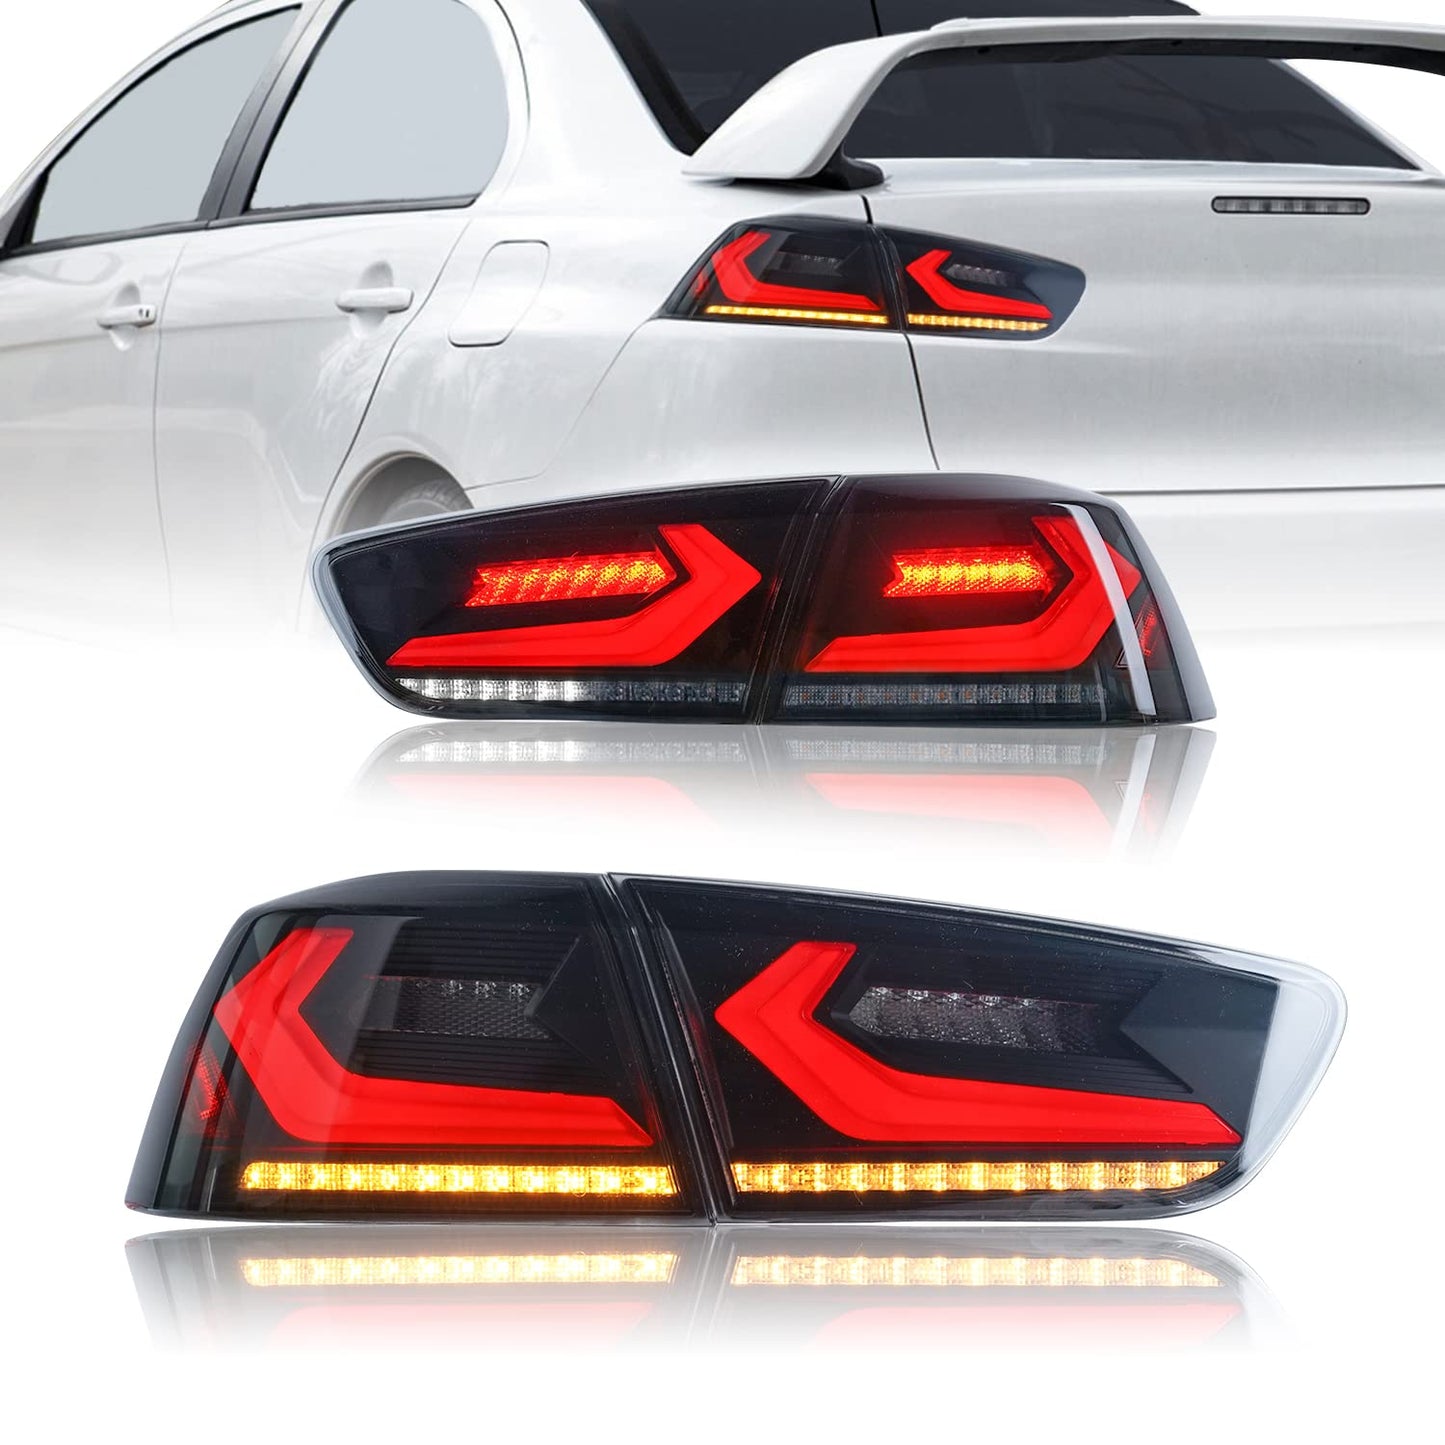 Vollständige LED-Rücklichter für Mitsubishi Lancer EVO X 2008-2020